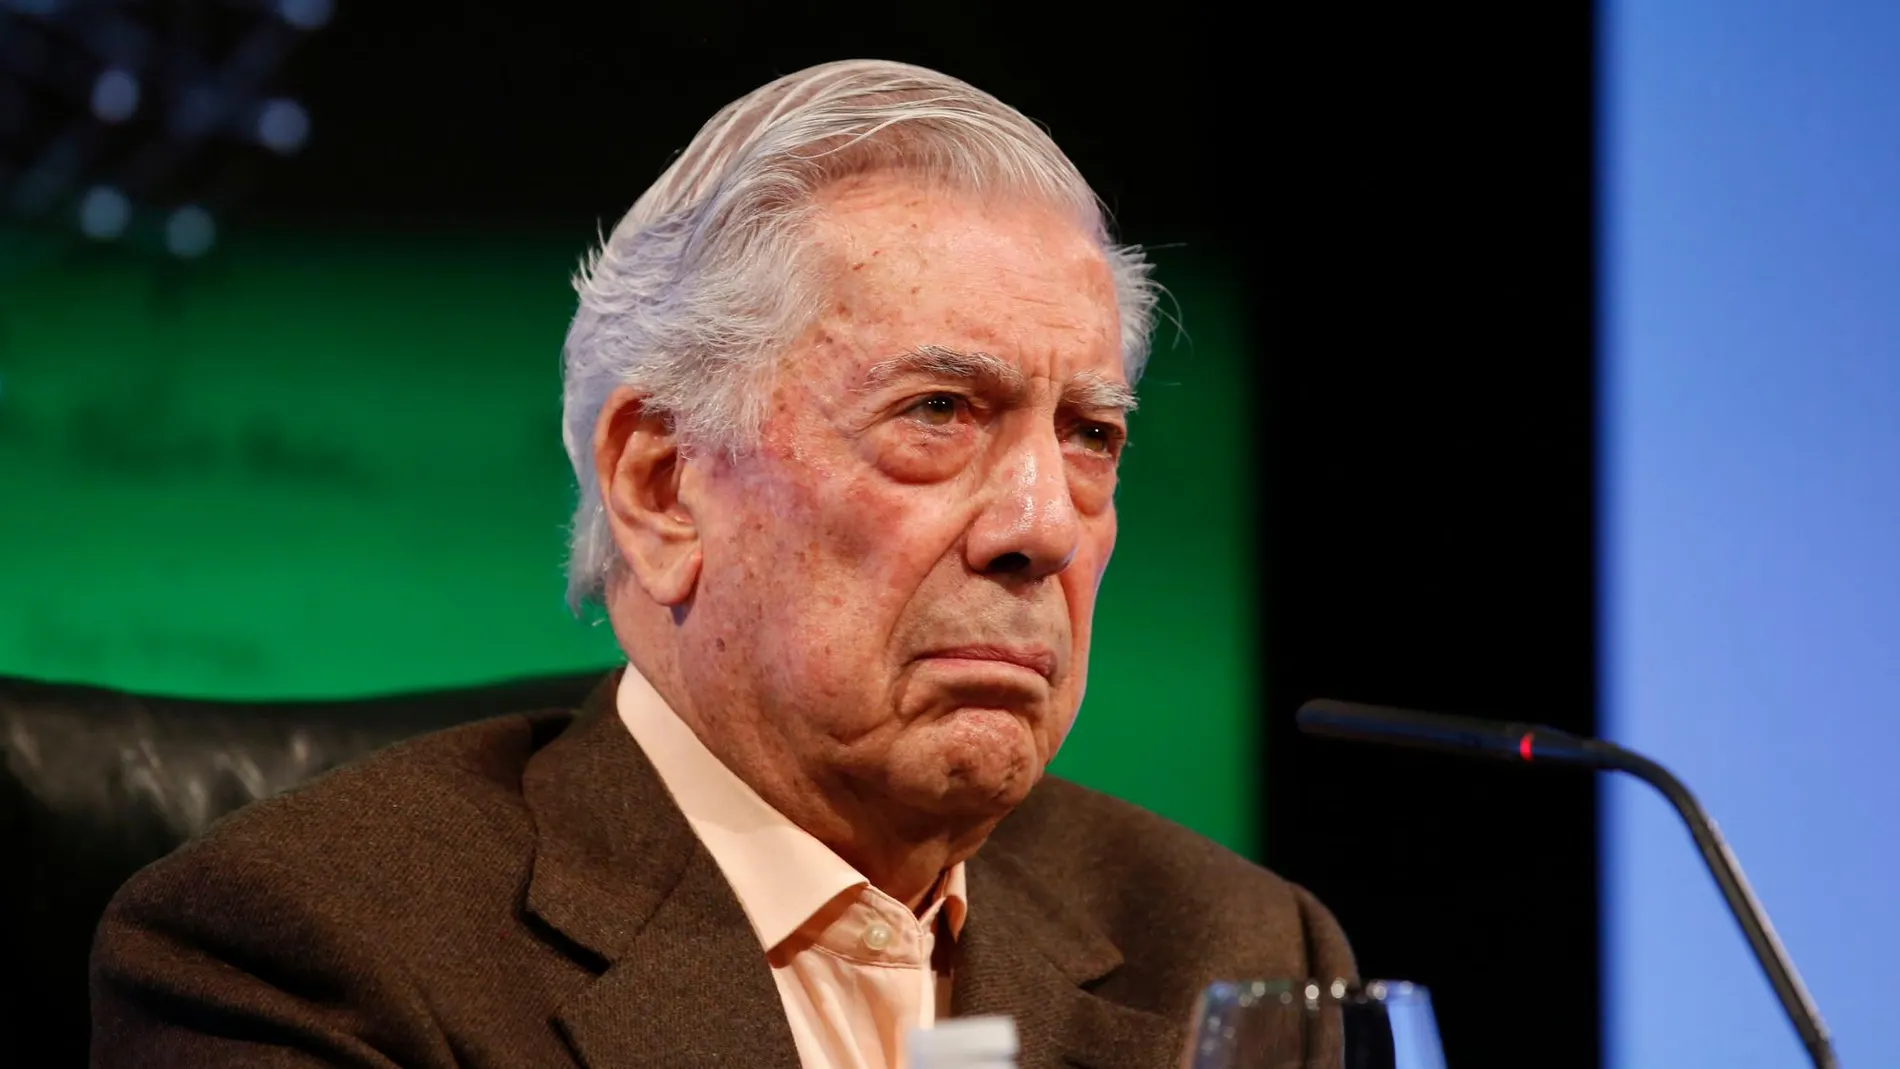 El escritor peruano Mario Vargas Llosa / Foto: J. Fdez-Largo